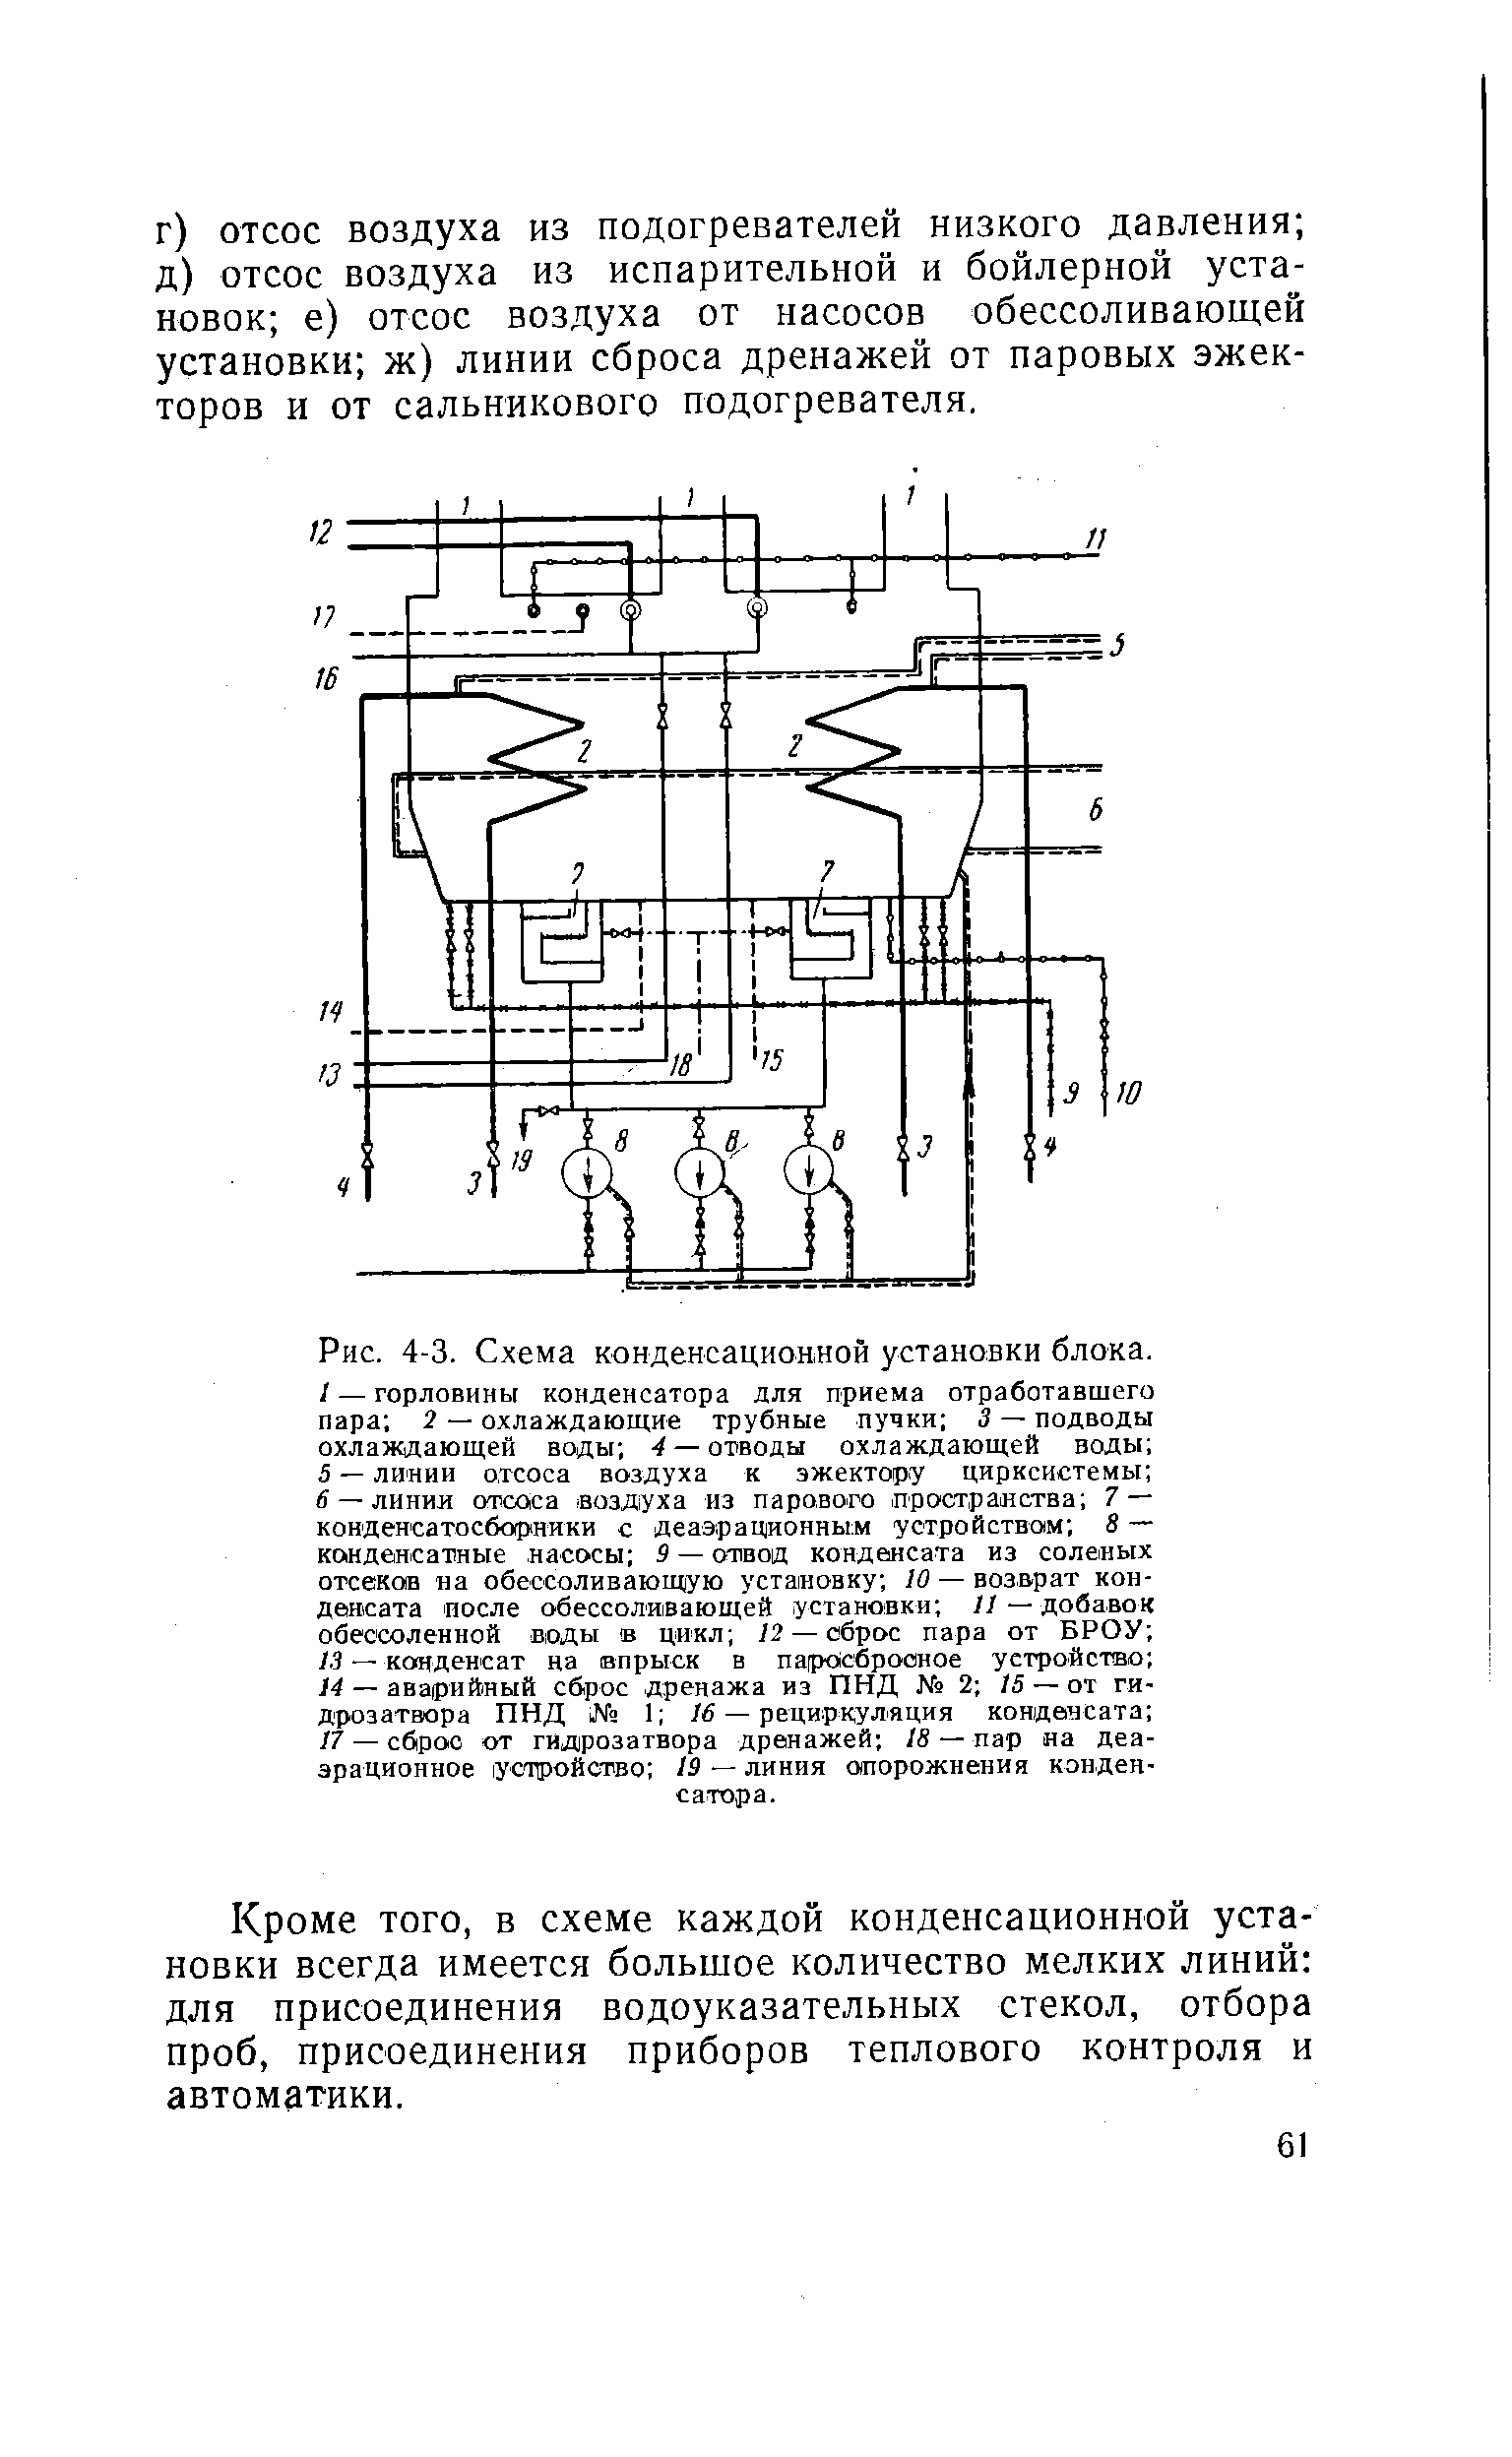 Рис. 4-3. Схема конденсационной установки блока.
